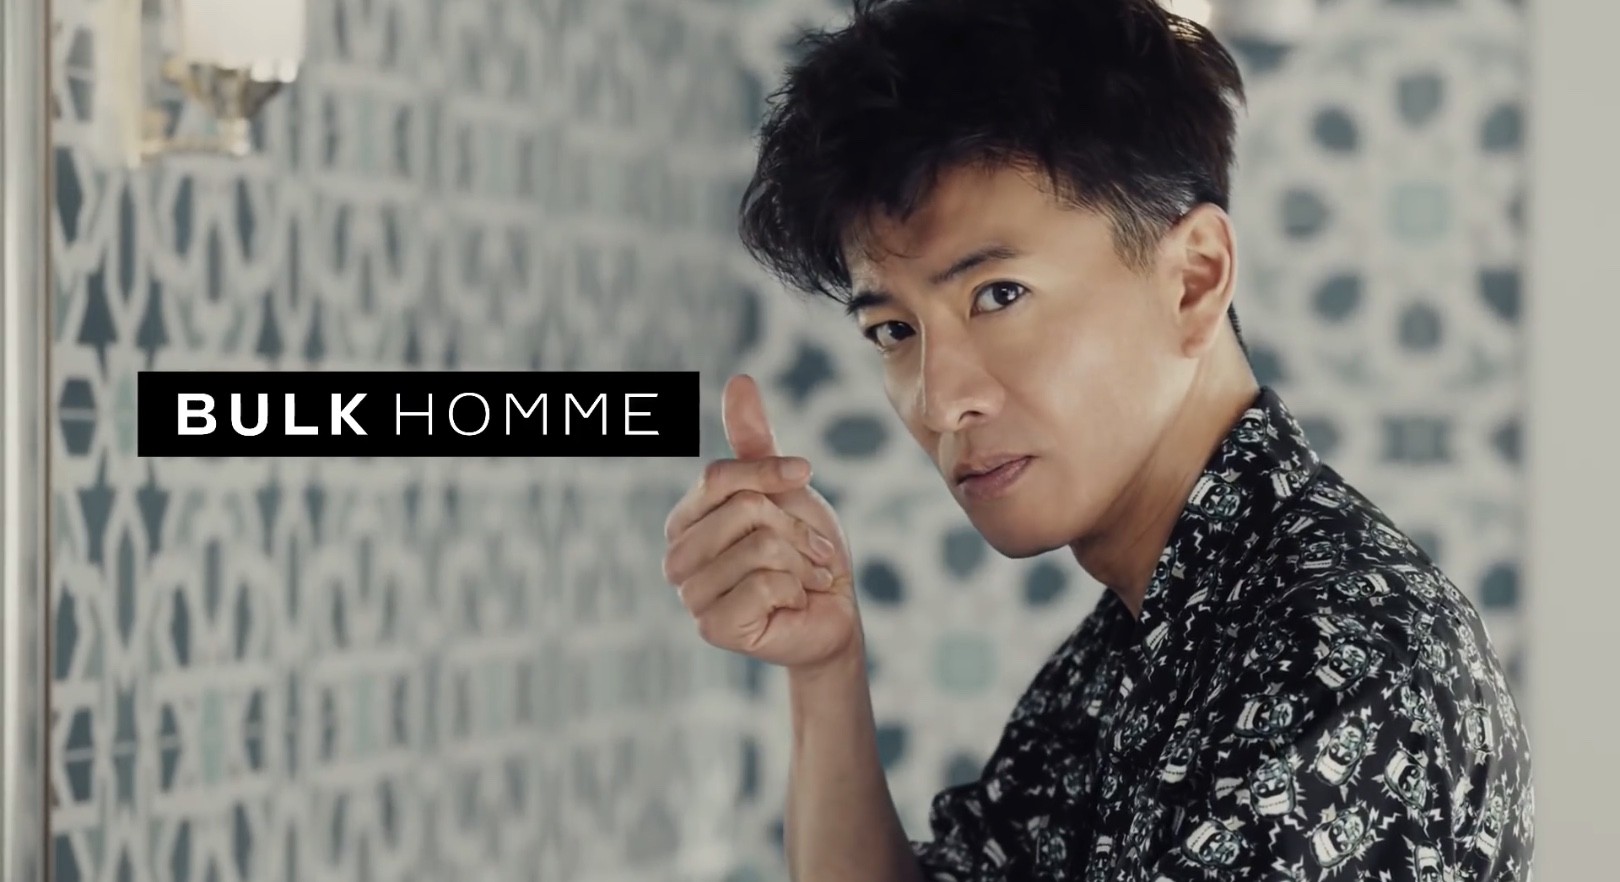 快讯 | 中国 USHOPAL 战略投资日本新锐男士护肤品牌 BULK HOMME